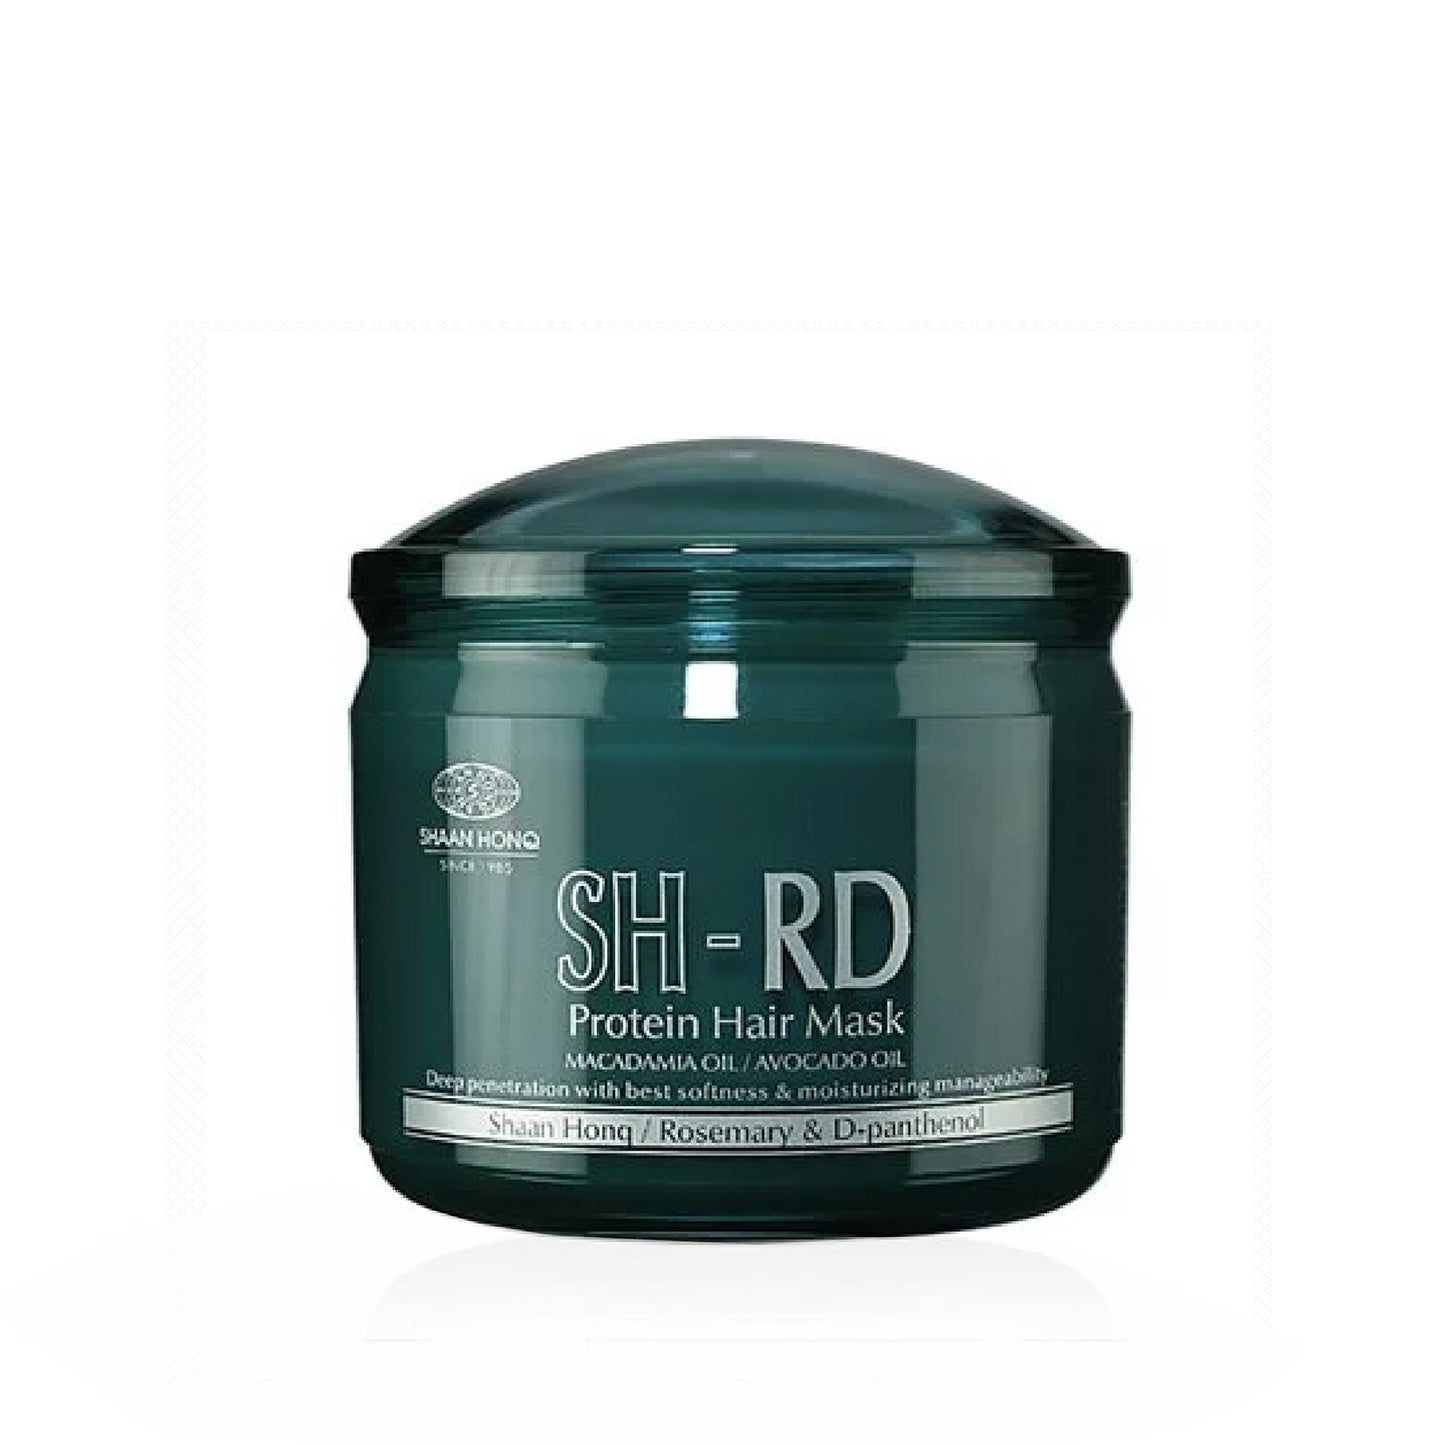 SH-RD Protein Hair Mask (13.5oz/400ml)